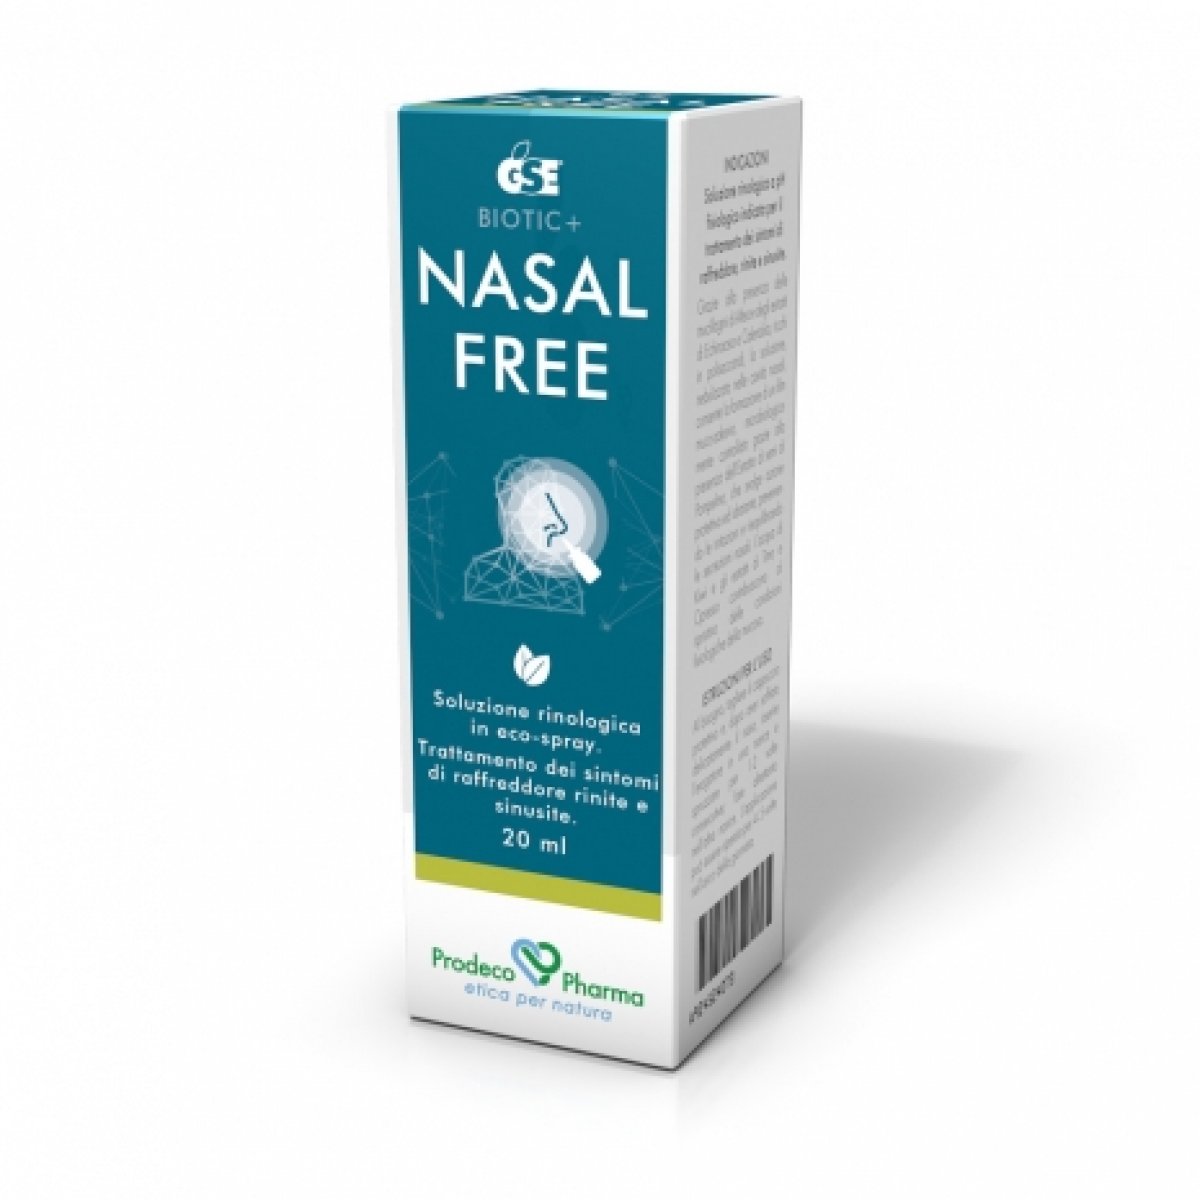 GSE NASAL FREE Spray - Prodeco Pharma GSE Nasal Free è una soluzione rinologica a pH fisiologico indicata per il trattamento dei sintomi di raffreddore, rinite e sinusite. Soluzione rinologica in eco-spray da 20 ml.